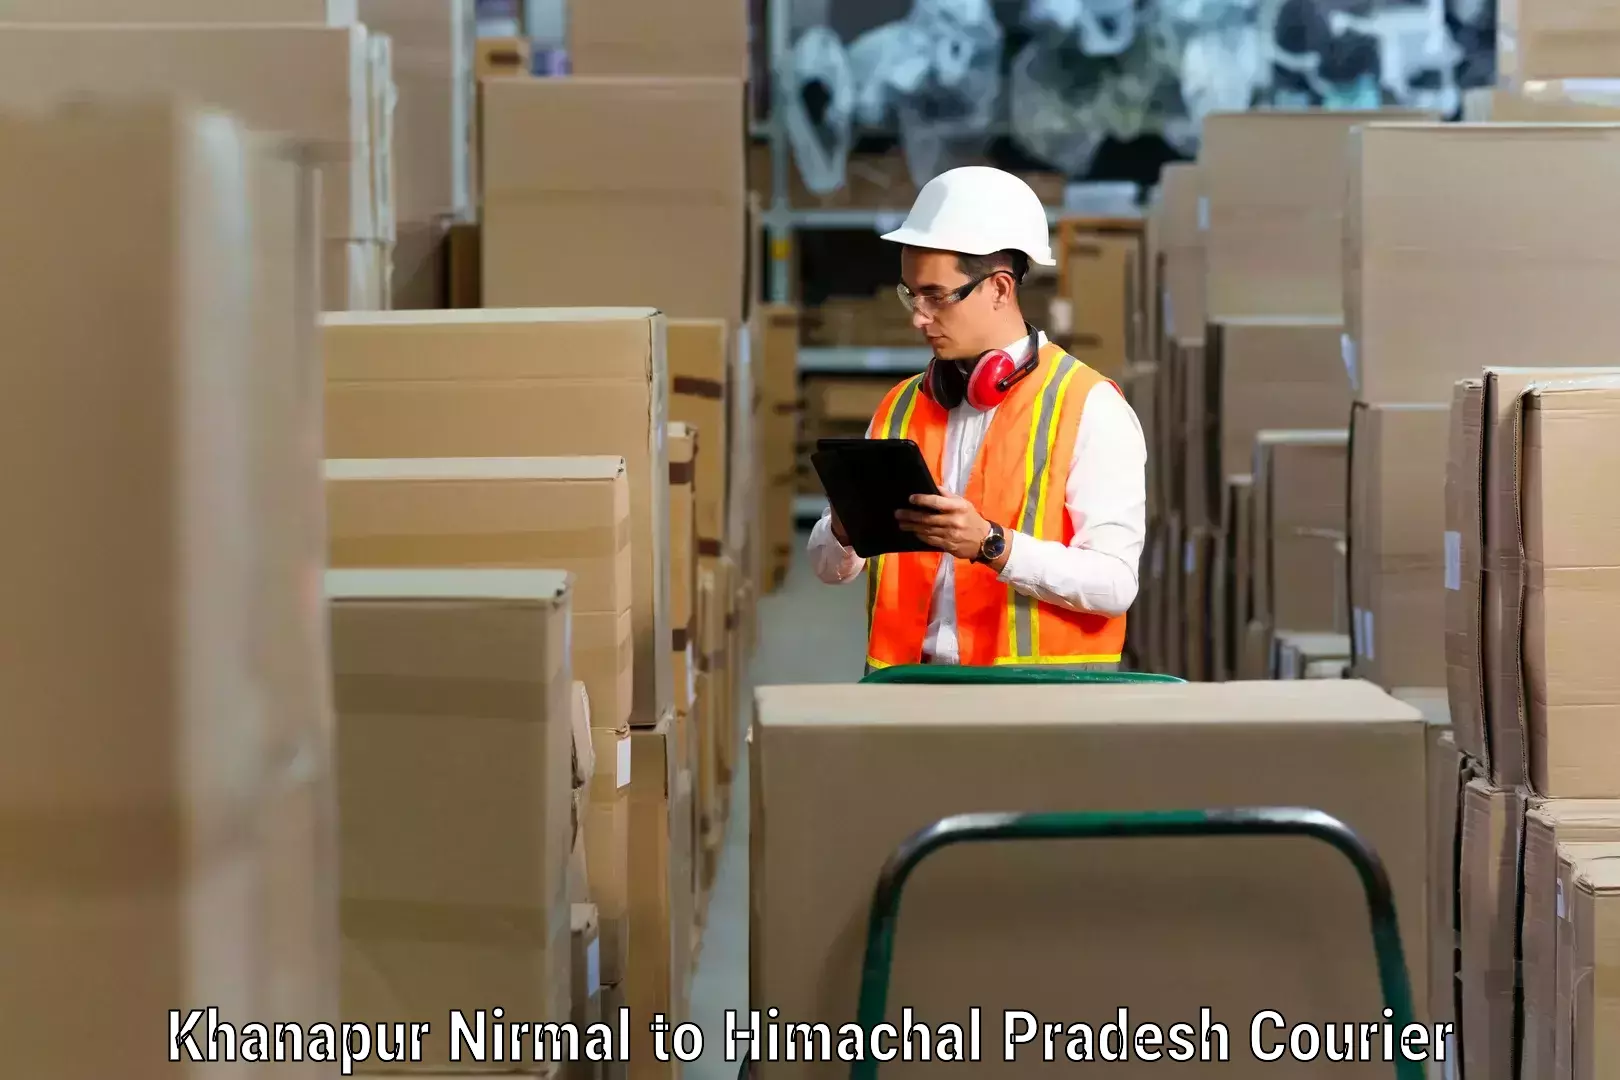 Professional moving company Khanapur Nirmal to Chintpurni